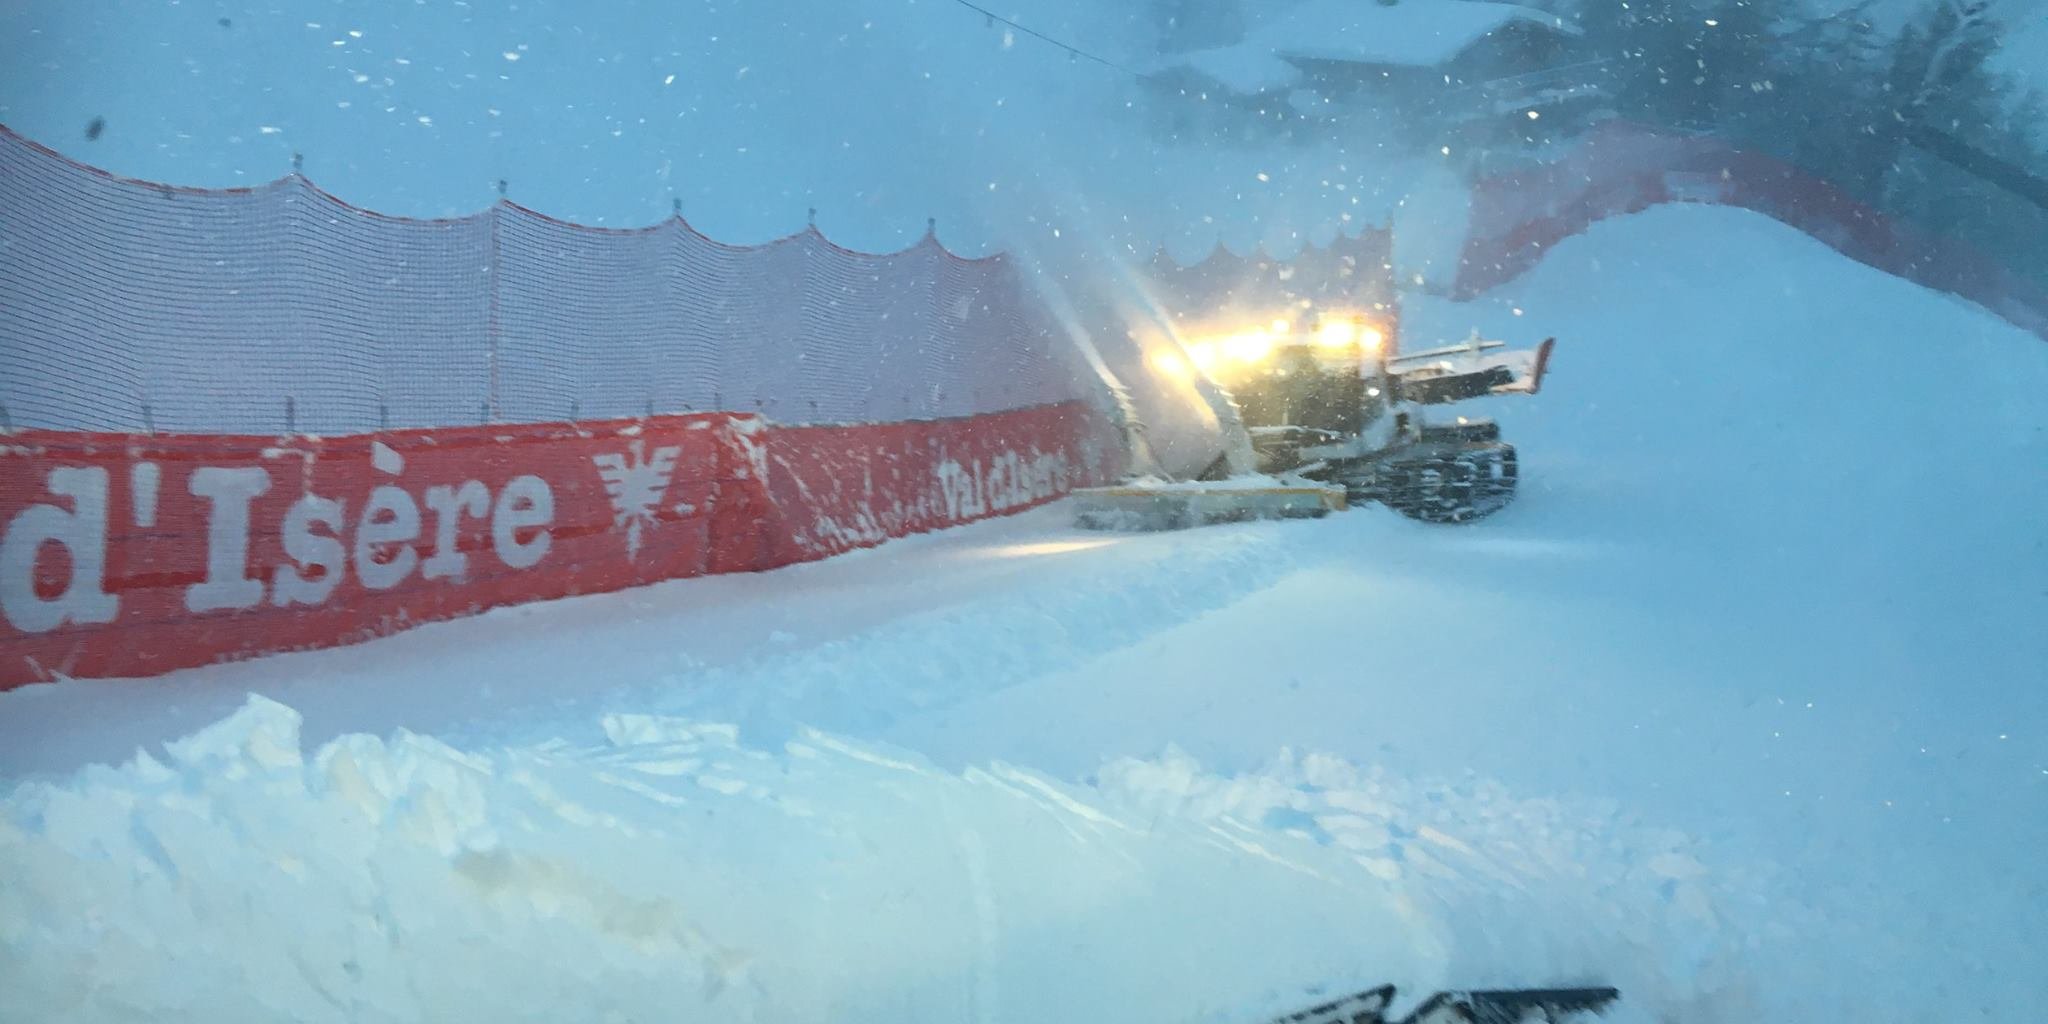 Kép: Critérium de la 1ère Neige - AUDI FIS Ski World Cup Val d